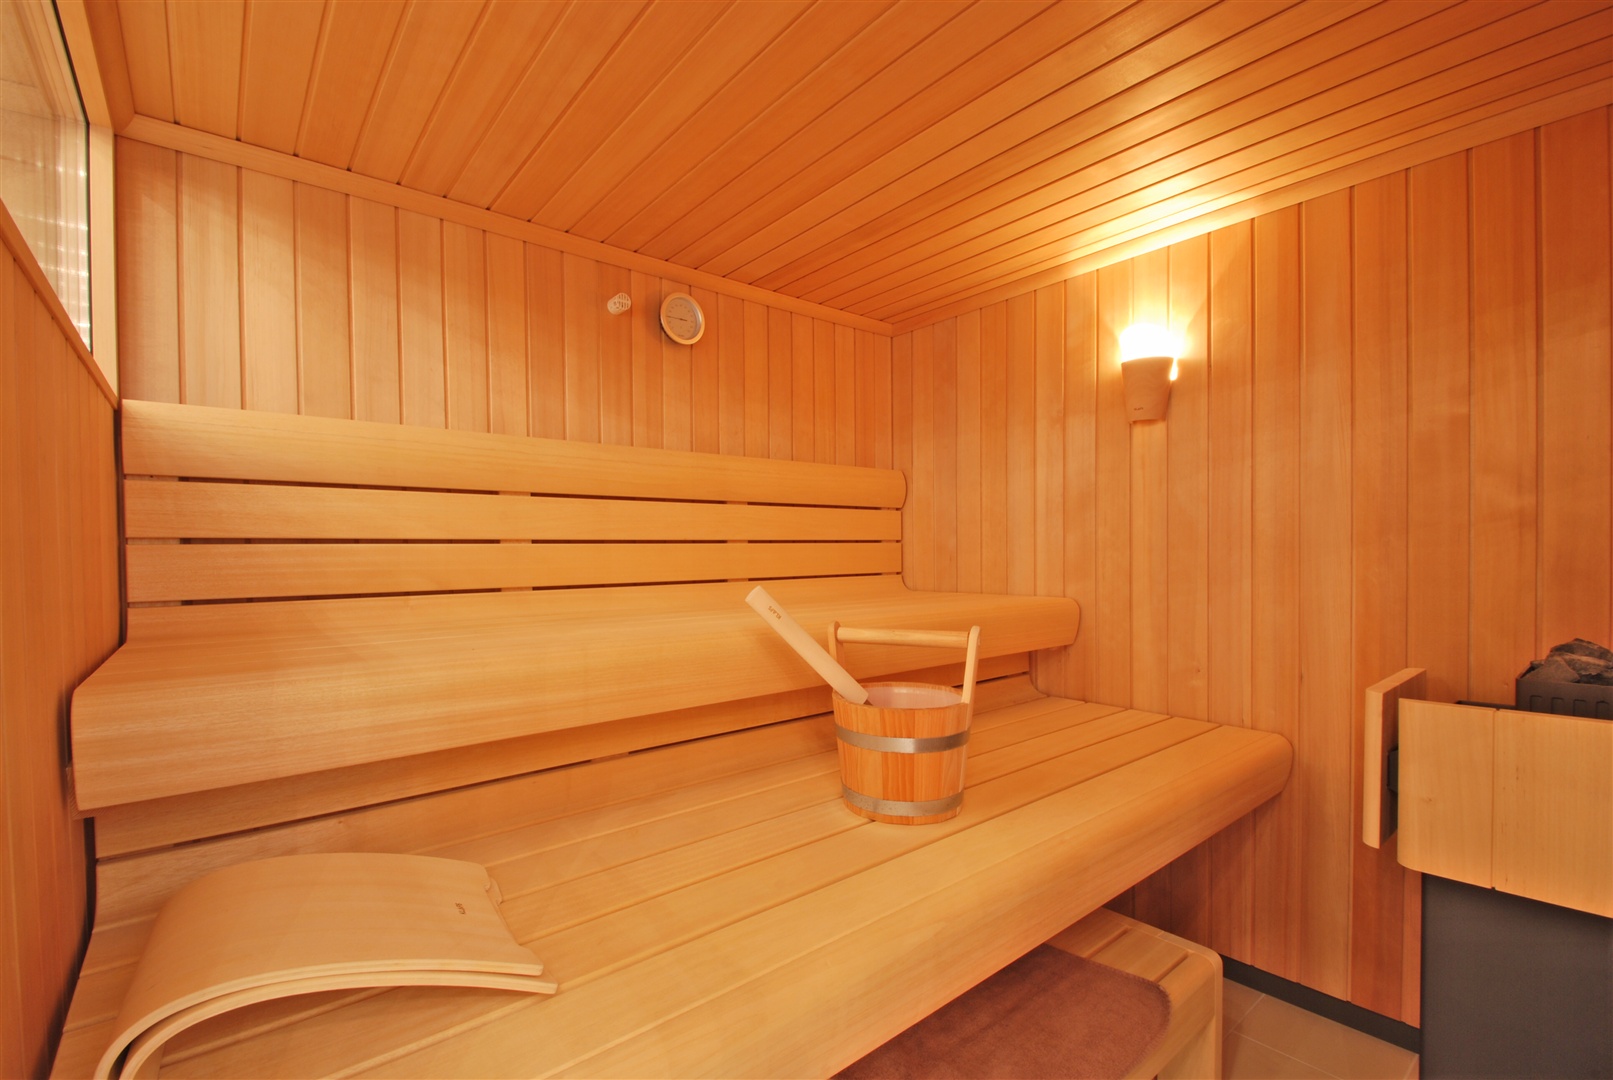 Die sehr hochwertige Sauna vom Qualitätshersteller. - Oliver Reifferscheid - Immobilienmakler Darmstadt